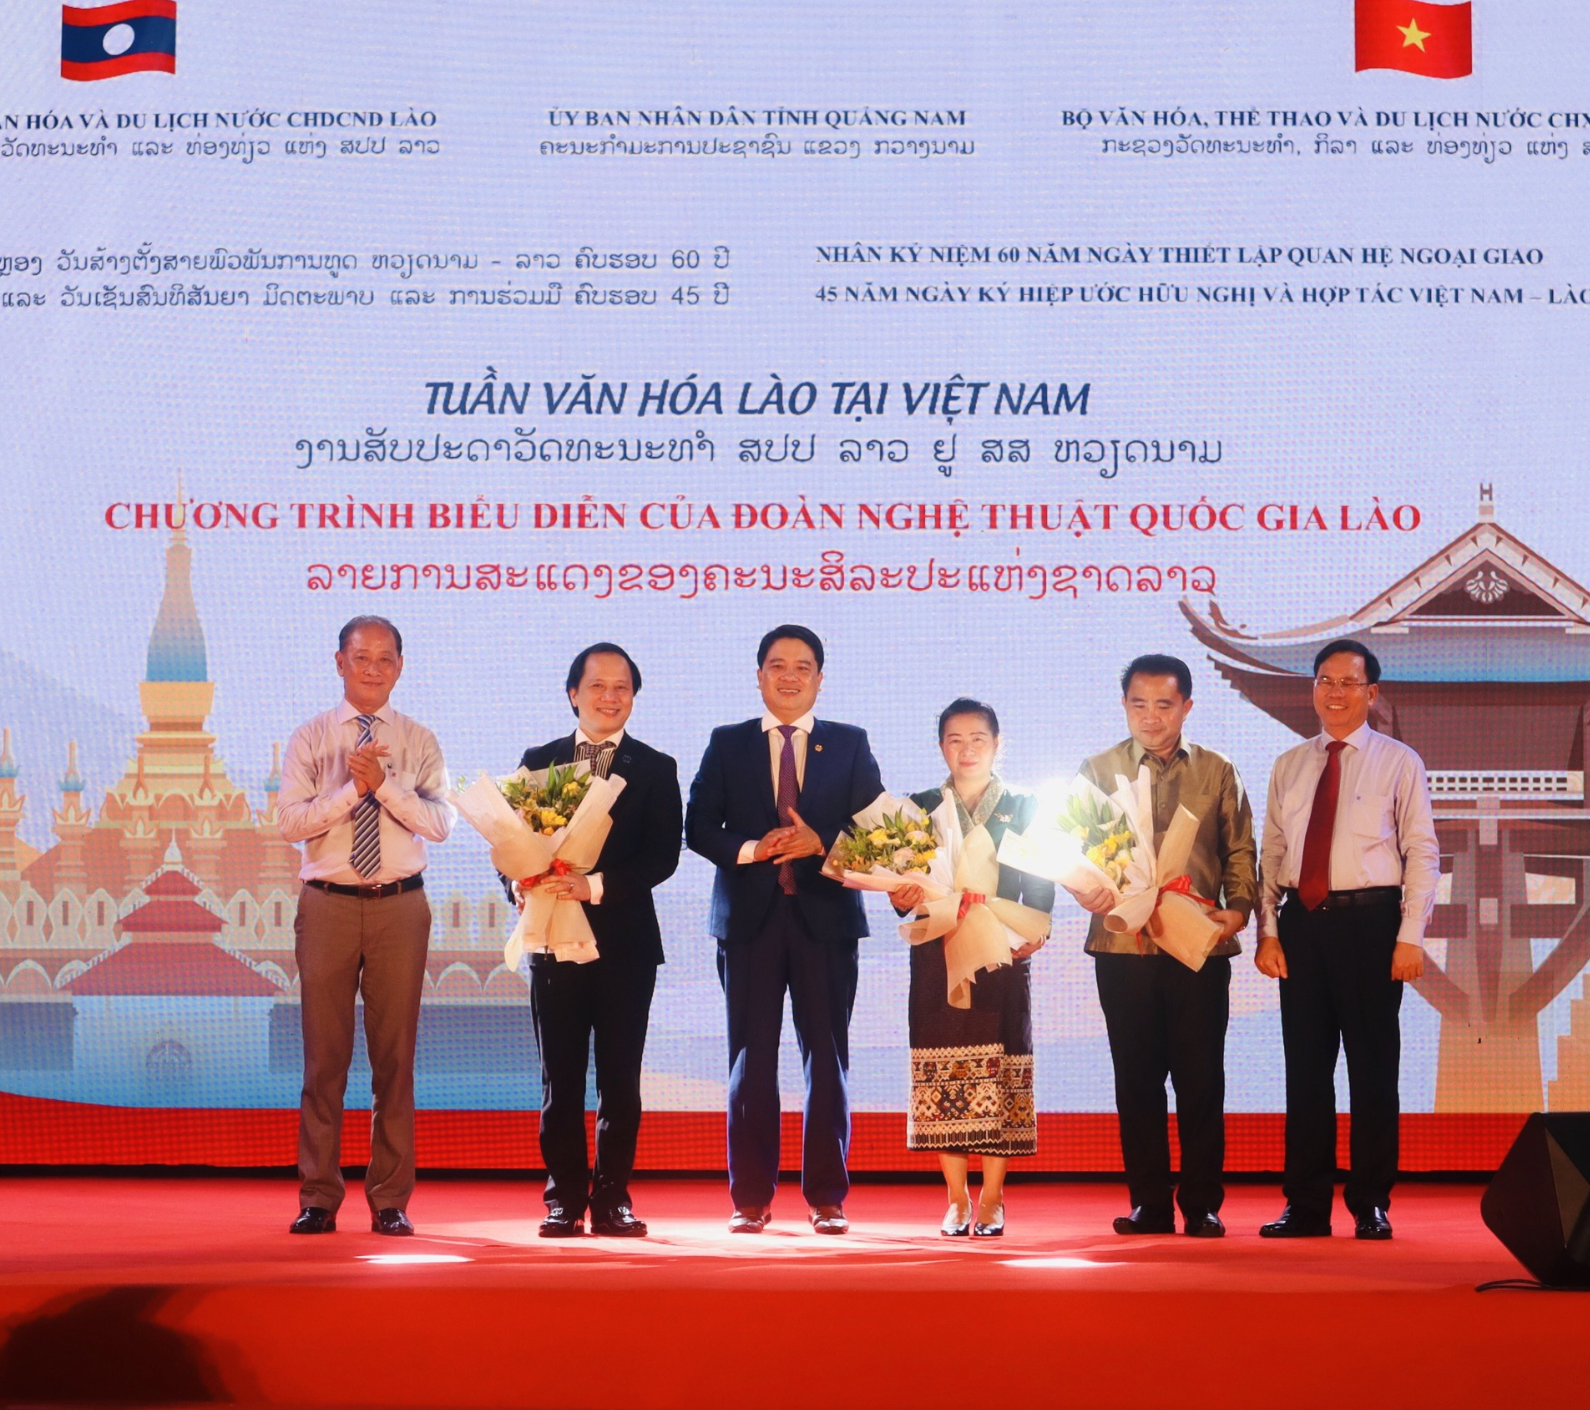 Lan toả làn điệu lăm-vông – nét đẹp nghệ thuật và đặc trưng văn hoá của nước bạn Lào anh em đến với người dân Việt Nam